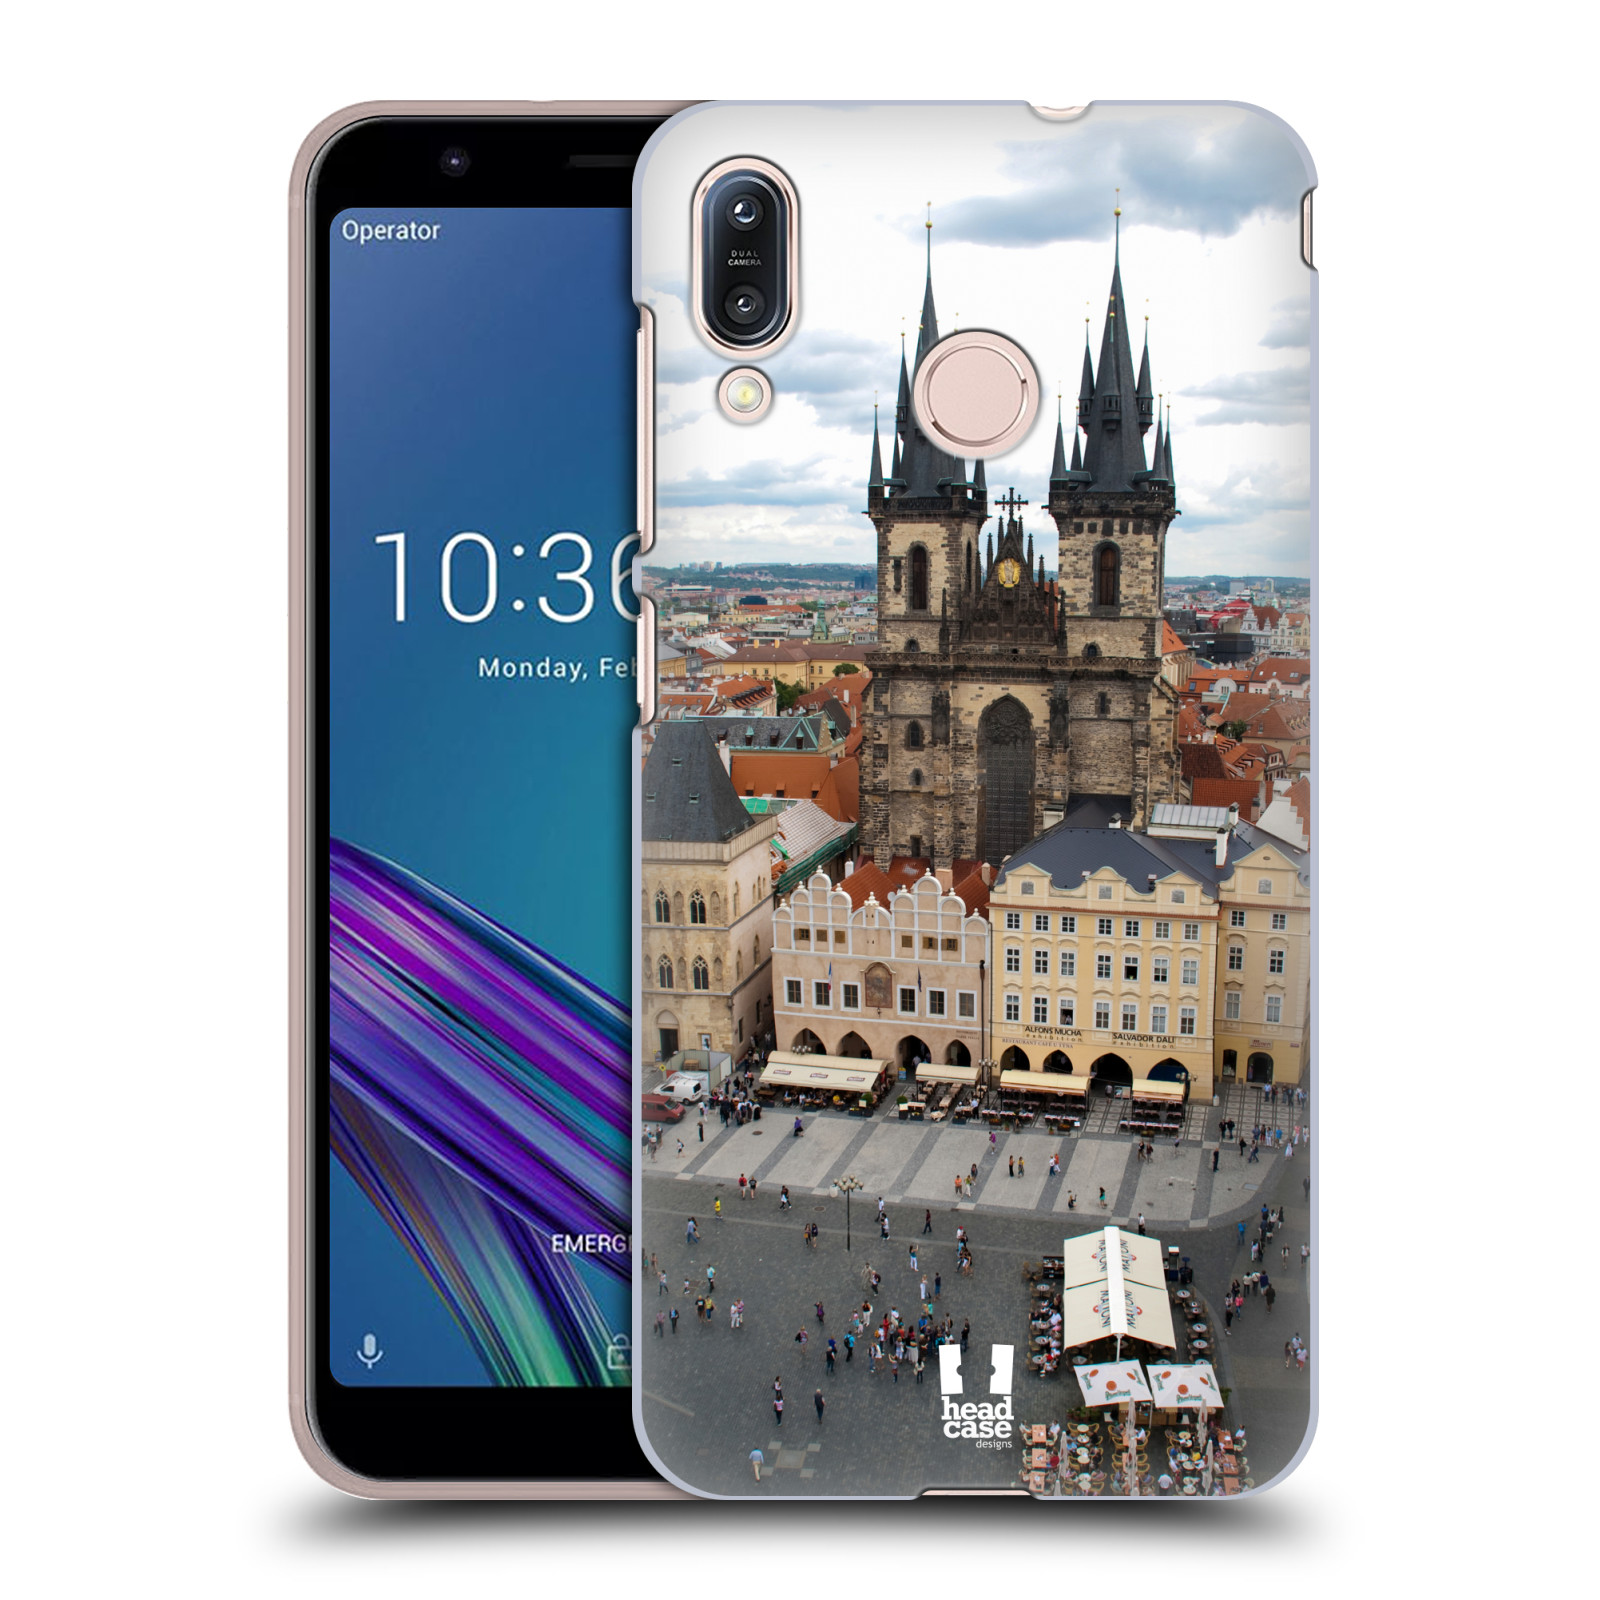 Pouzdro na mobil Asus Zenfone Max M1 (ZB555KL) - HEAD CASE - vzor Města foto náměstí ČESKÁ REPUBLIKA, PRAHA, STAROMĚSTSKÉ NÁMĚSTÍ